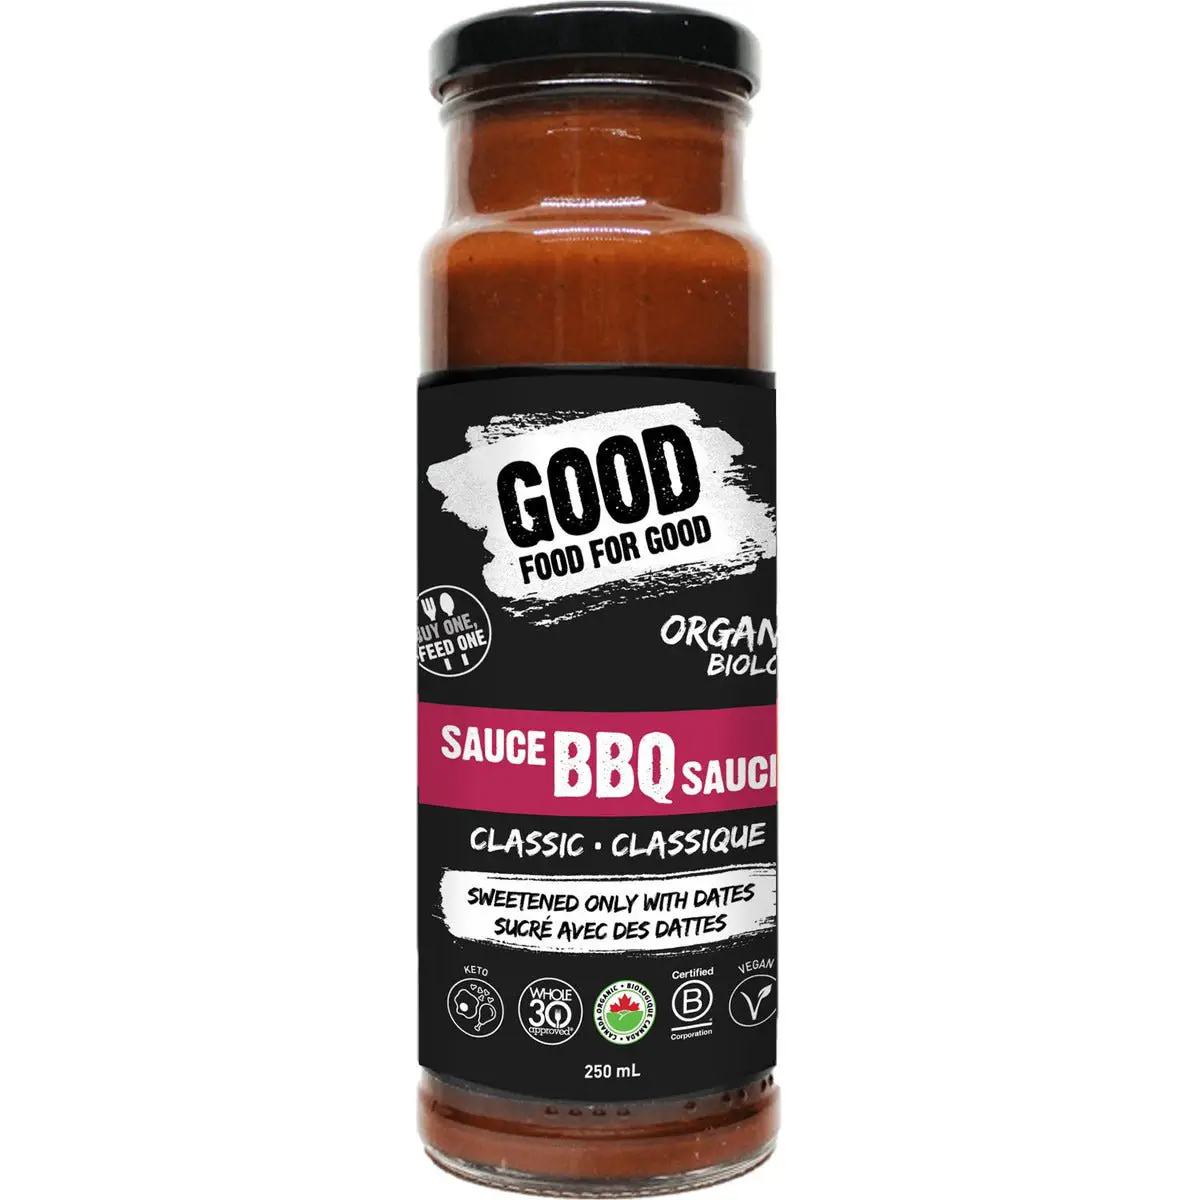 Good Food For Good Organic BBQ Sauce